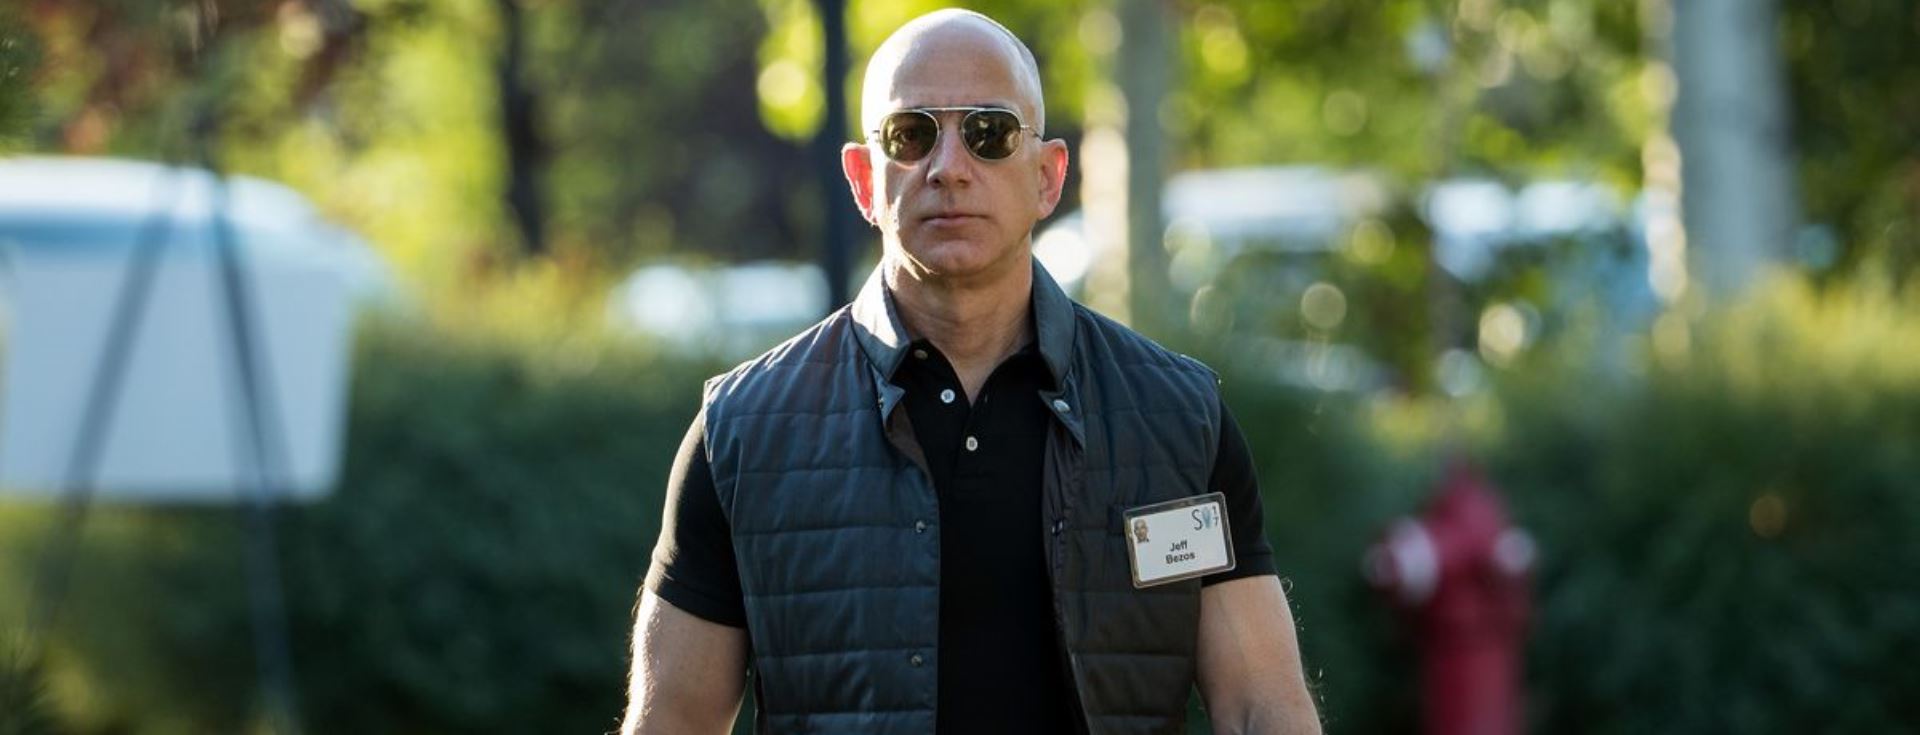 20 Yılda 200 Milyar Dolarlık Bir Şirket Yaratan Jeff Bezos'un 10 Sözü